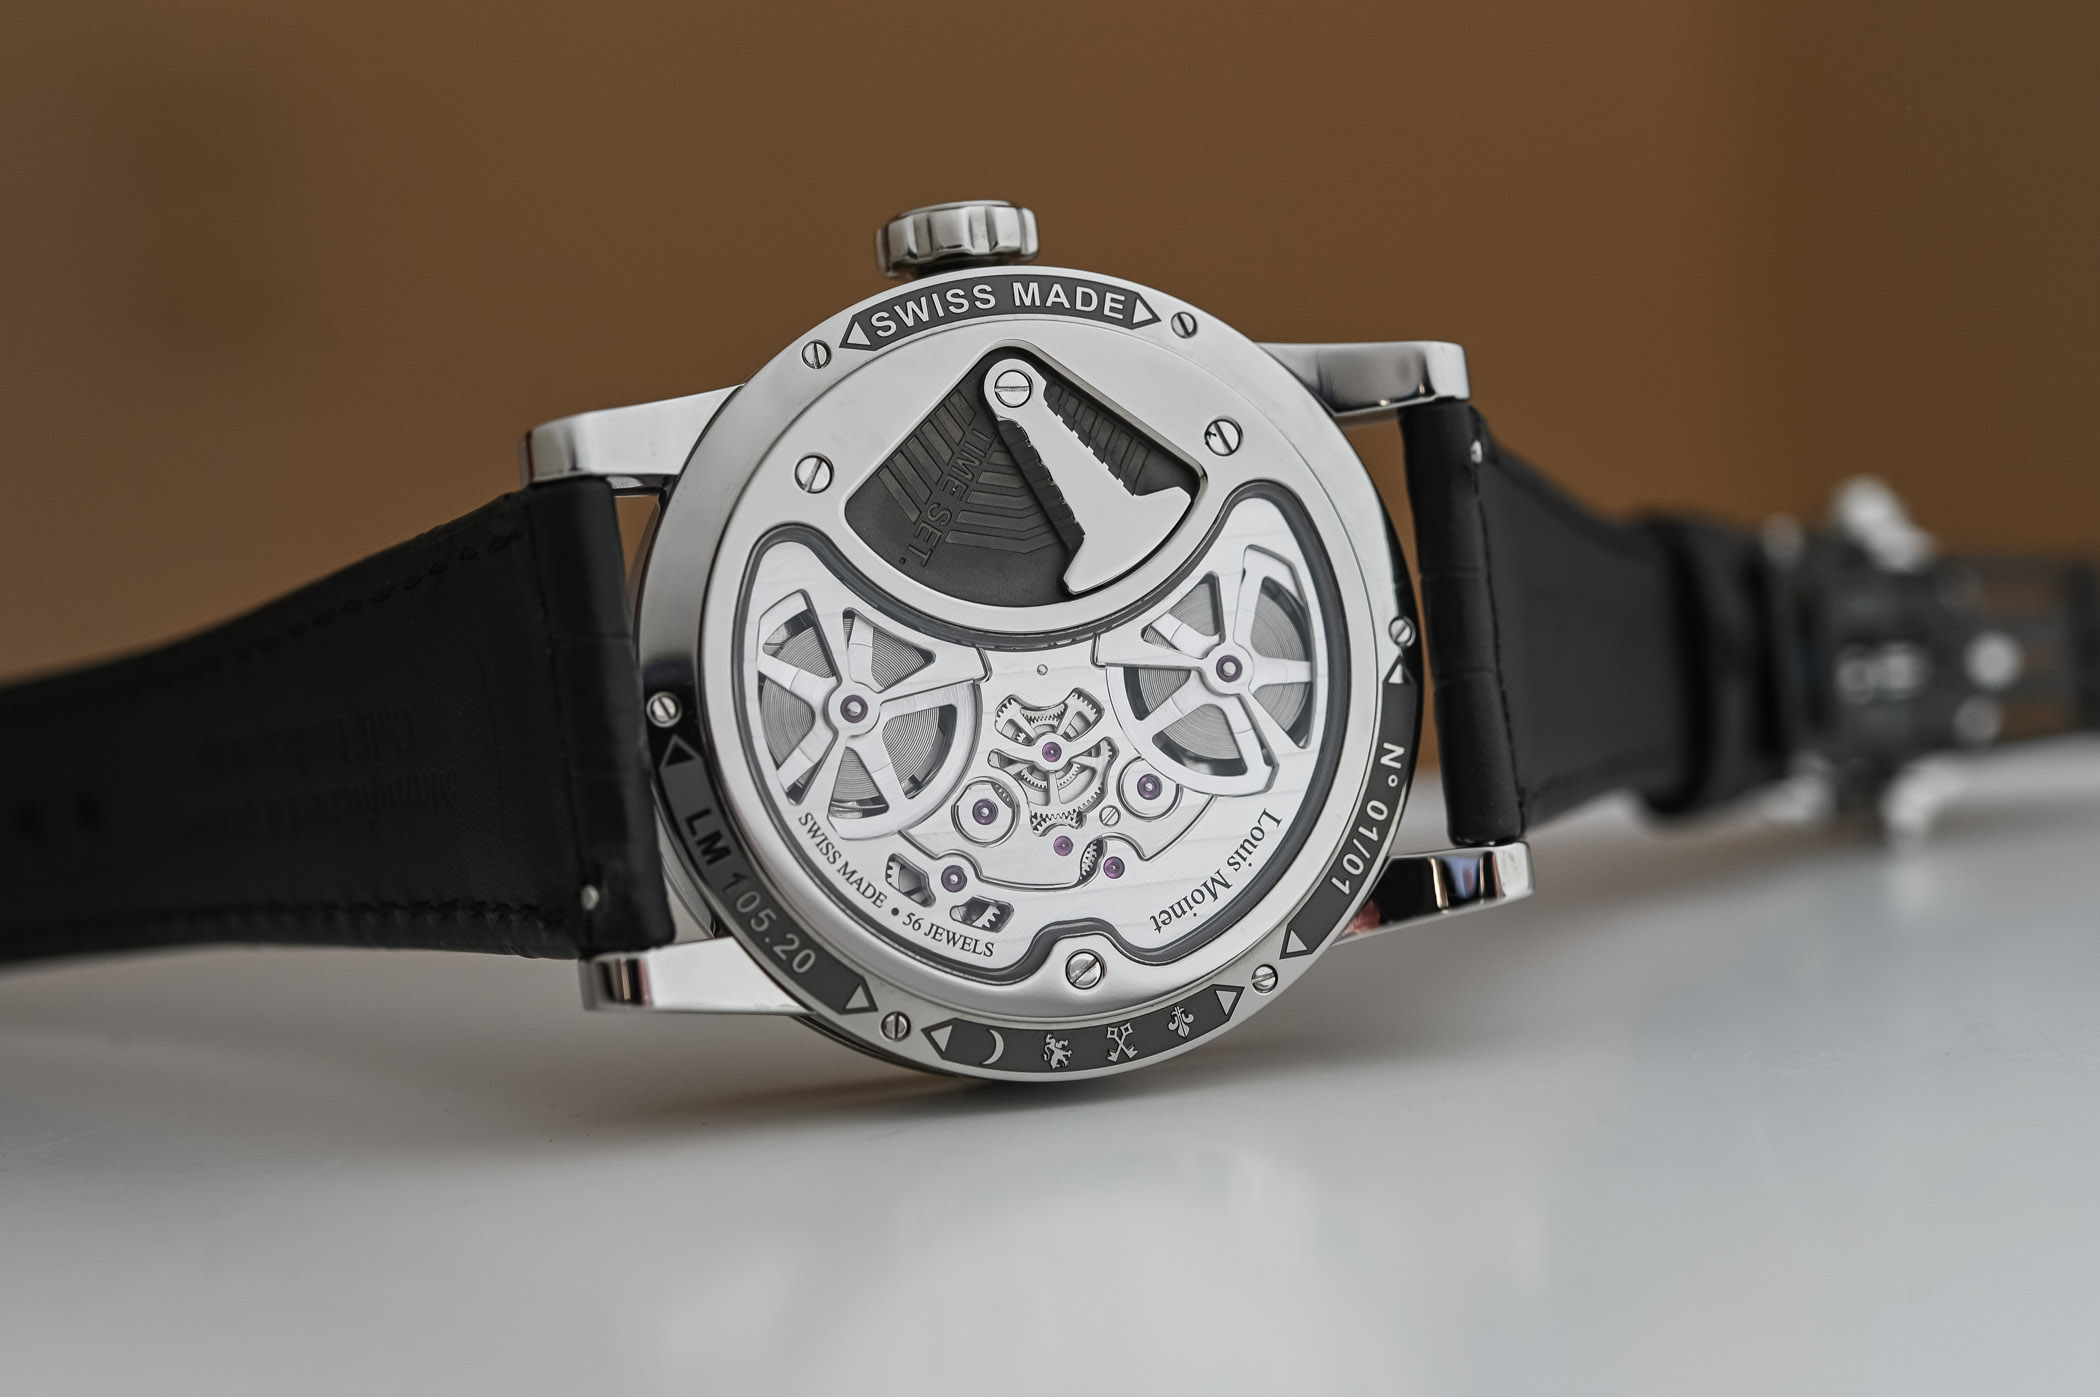 Часы Louis Moinet Astronef Techno и их научно-фантастический циферблат из кремниевых пластин